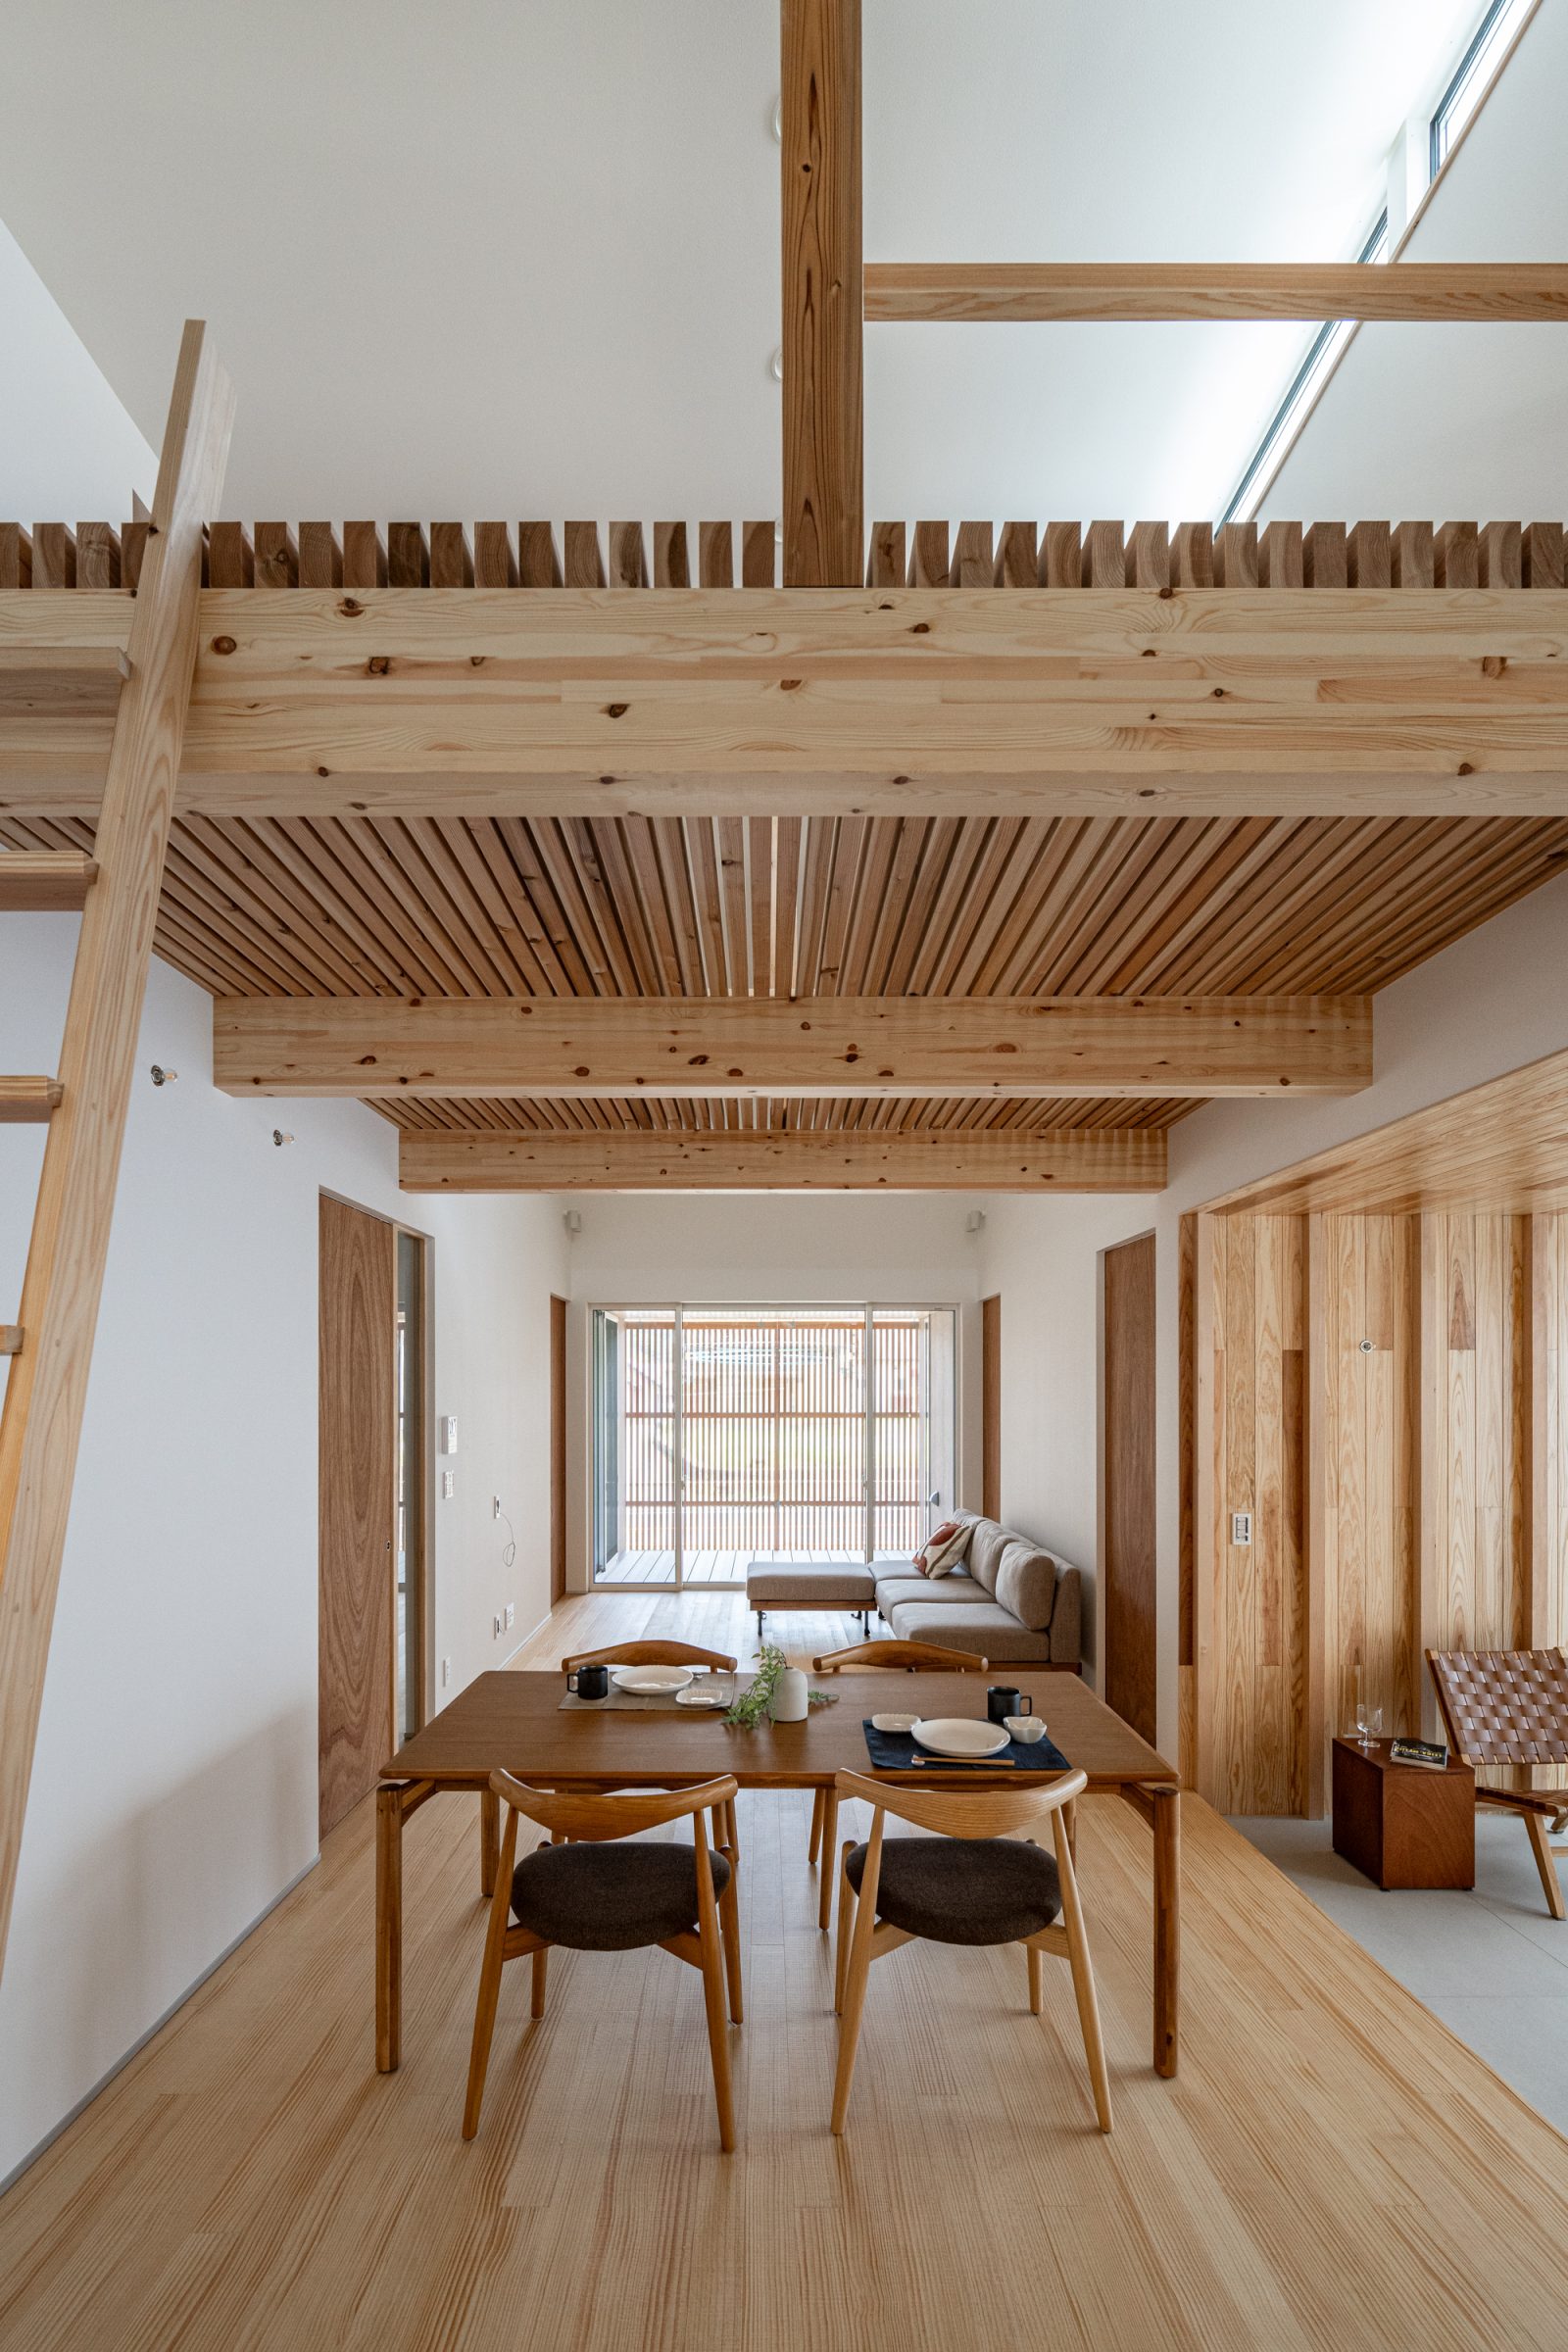 【飯塚市大分】建築家が考えた心地よさと意匠性を兼ね備えた平屋